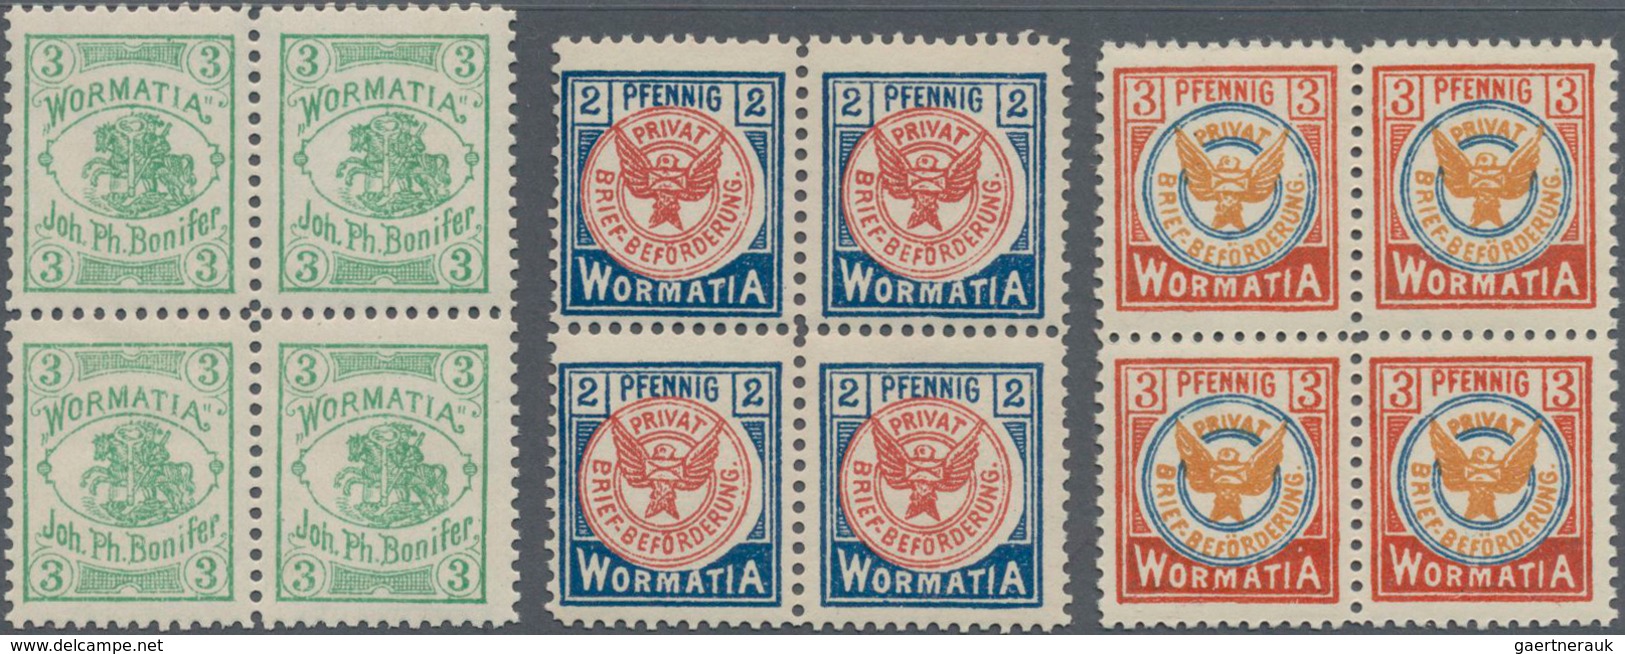 Deutsches Reich - Privatpost (Stadtpost): WORMS, Wormatia, Wappen 3 (Pfg.)im Postfrischen Viererbloc - Posta Privata & Locale